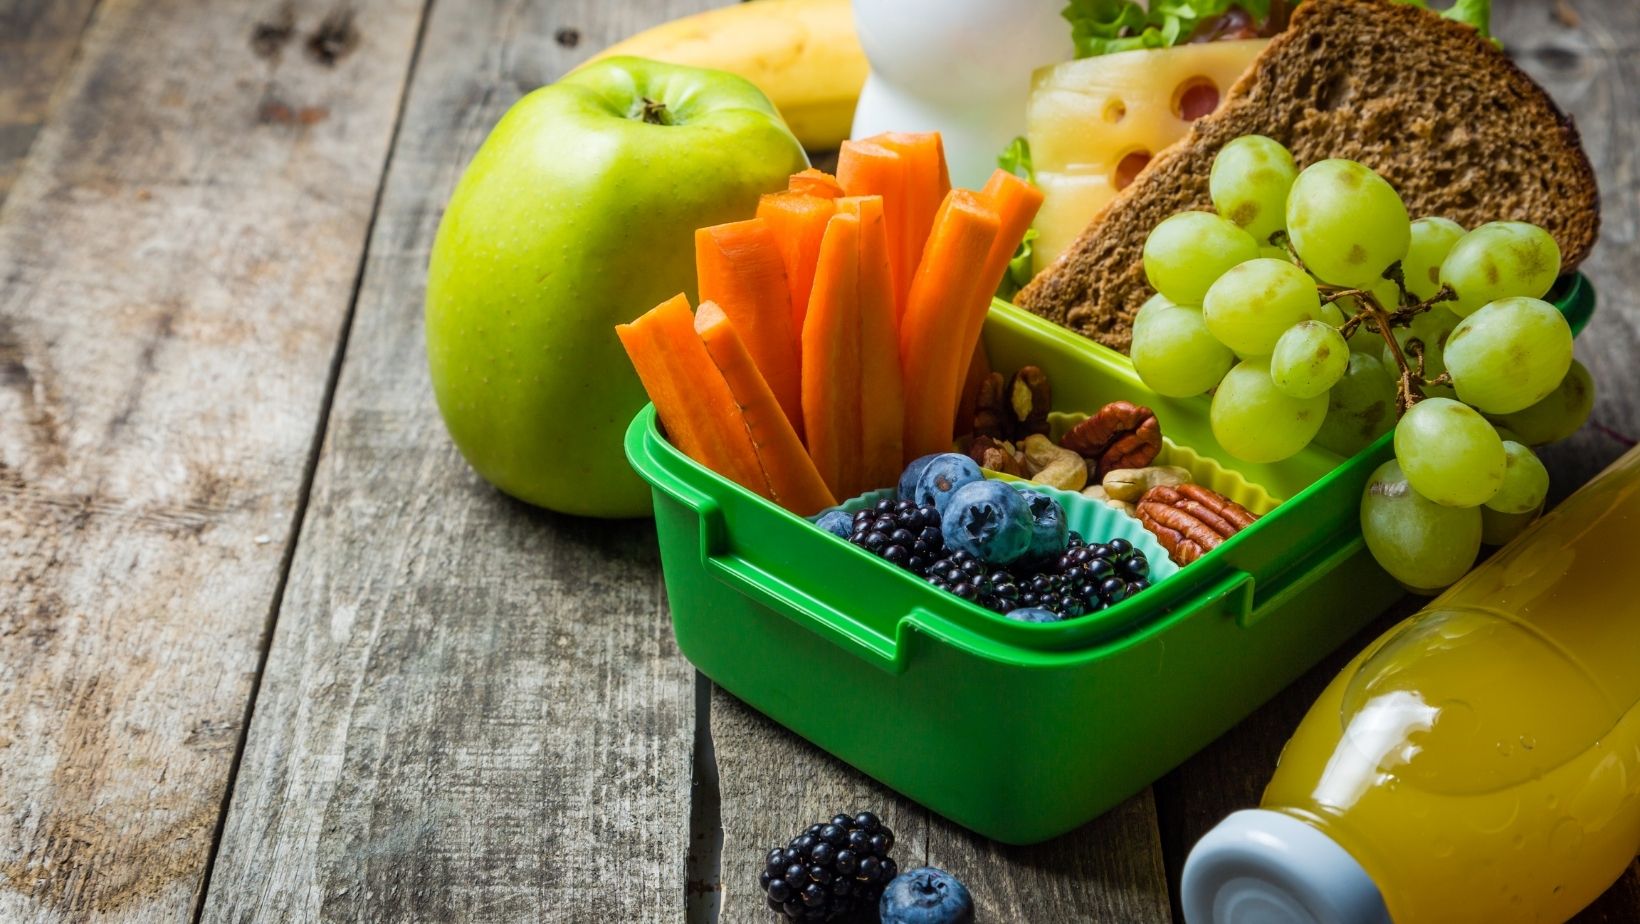 Hoe maak je de lunchbox voedzamer en beter voor het gebit?